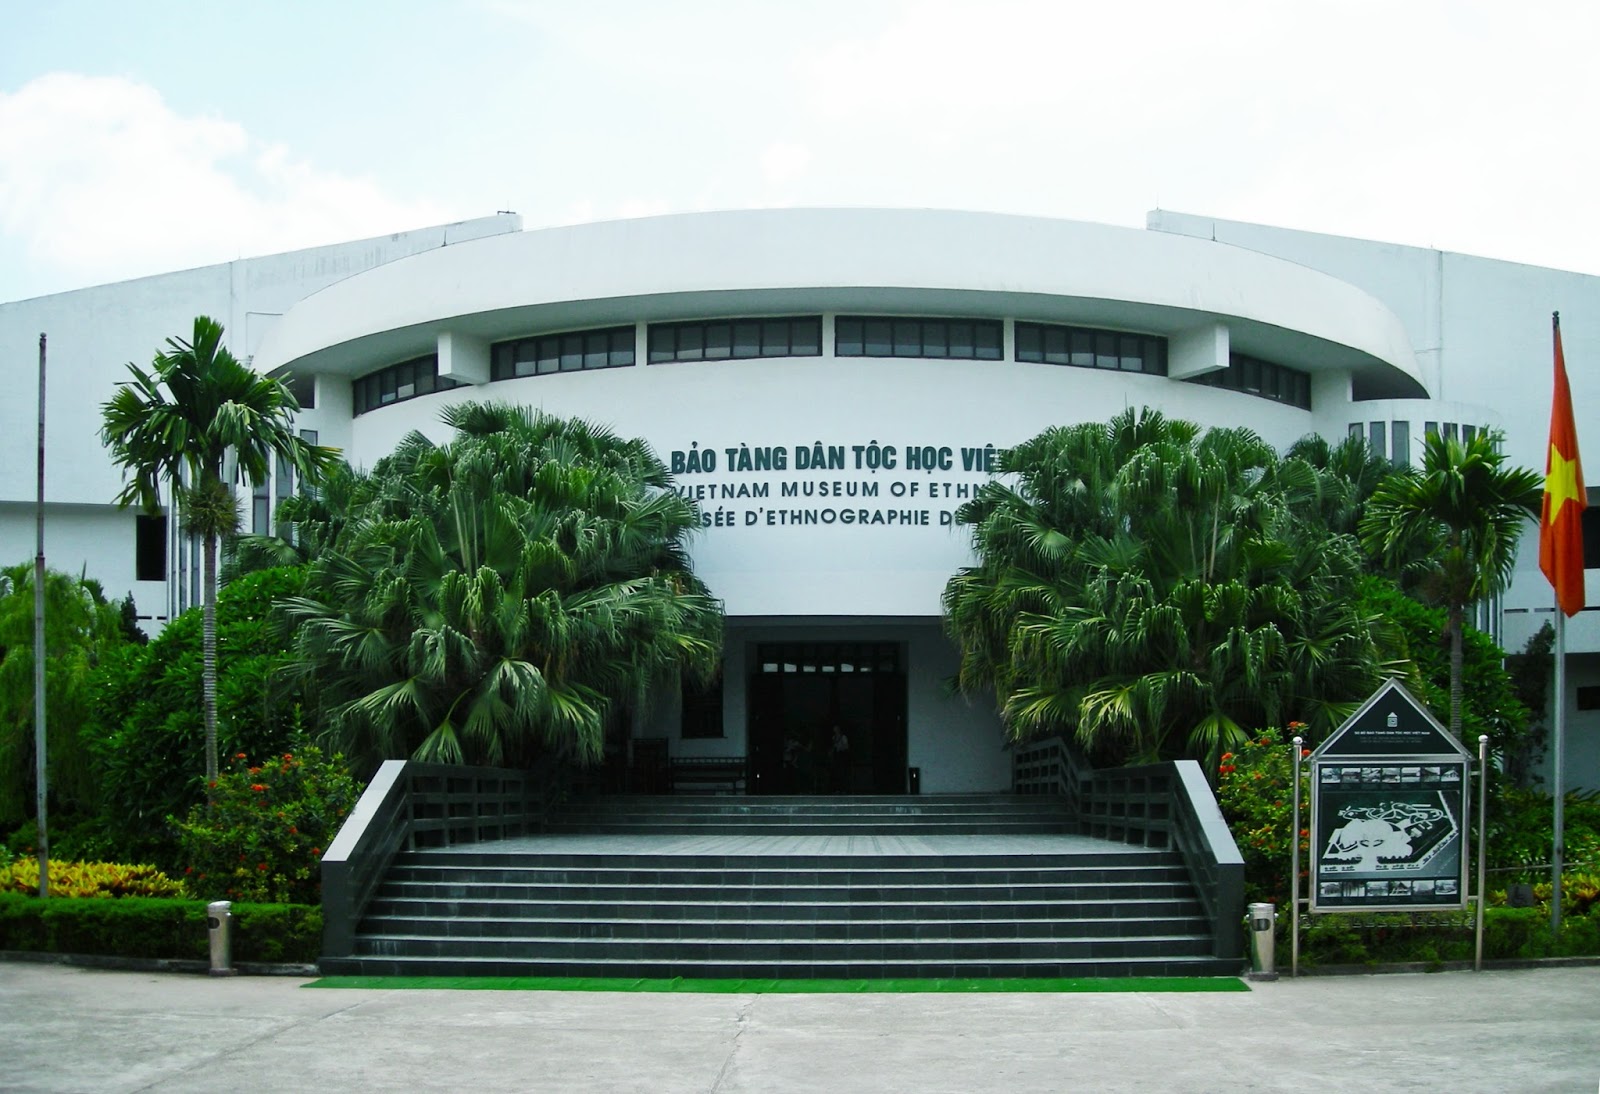 Bảo tàng dân tộc học Việt Nam tại Hà Nội